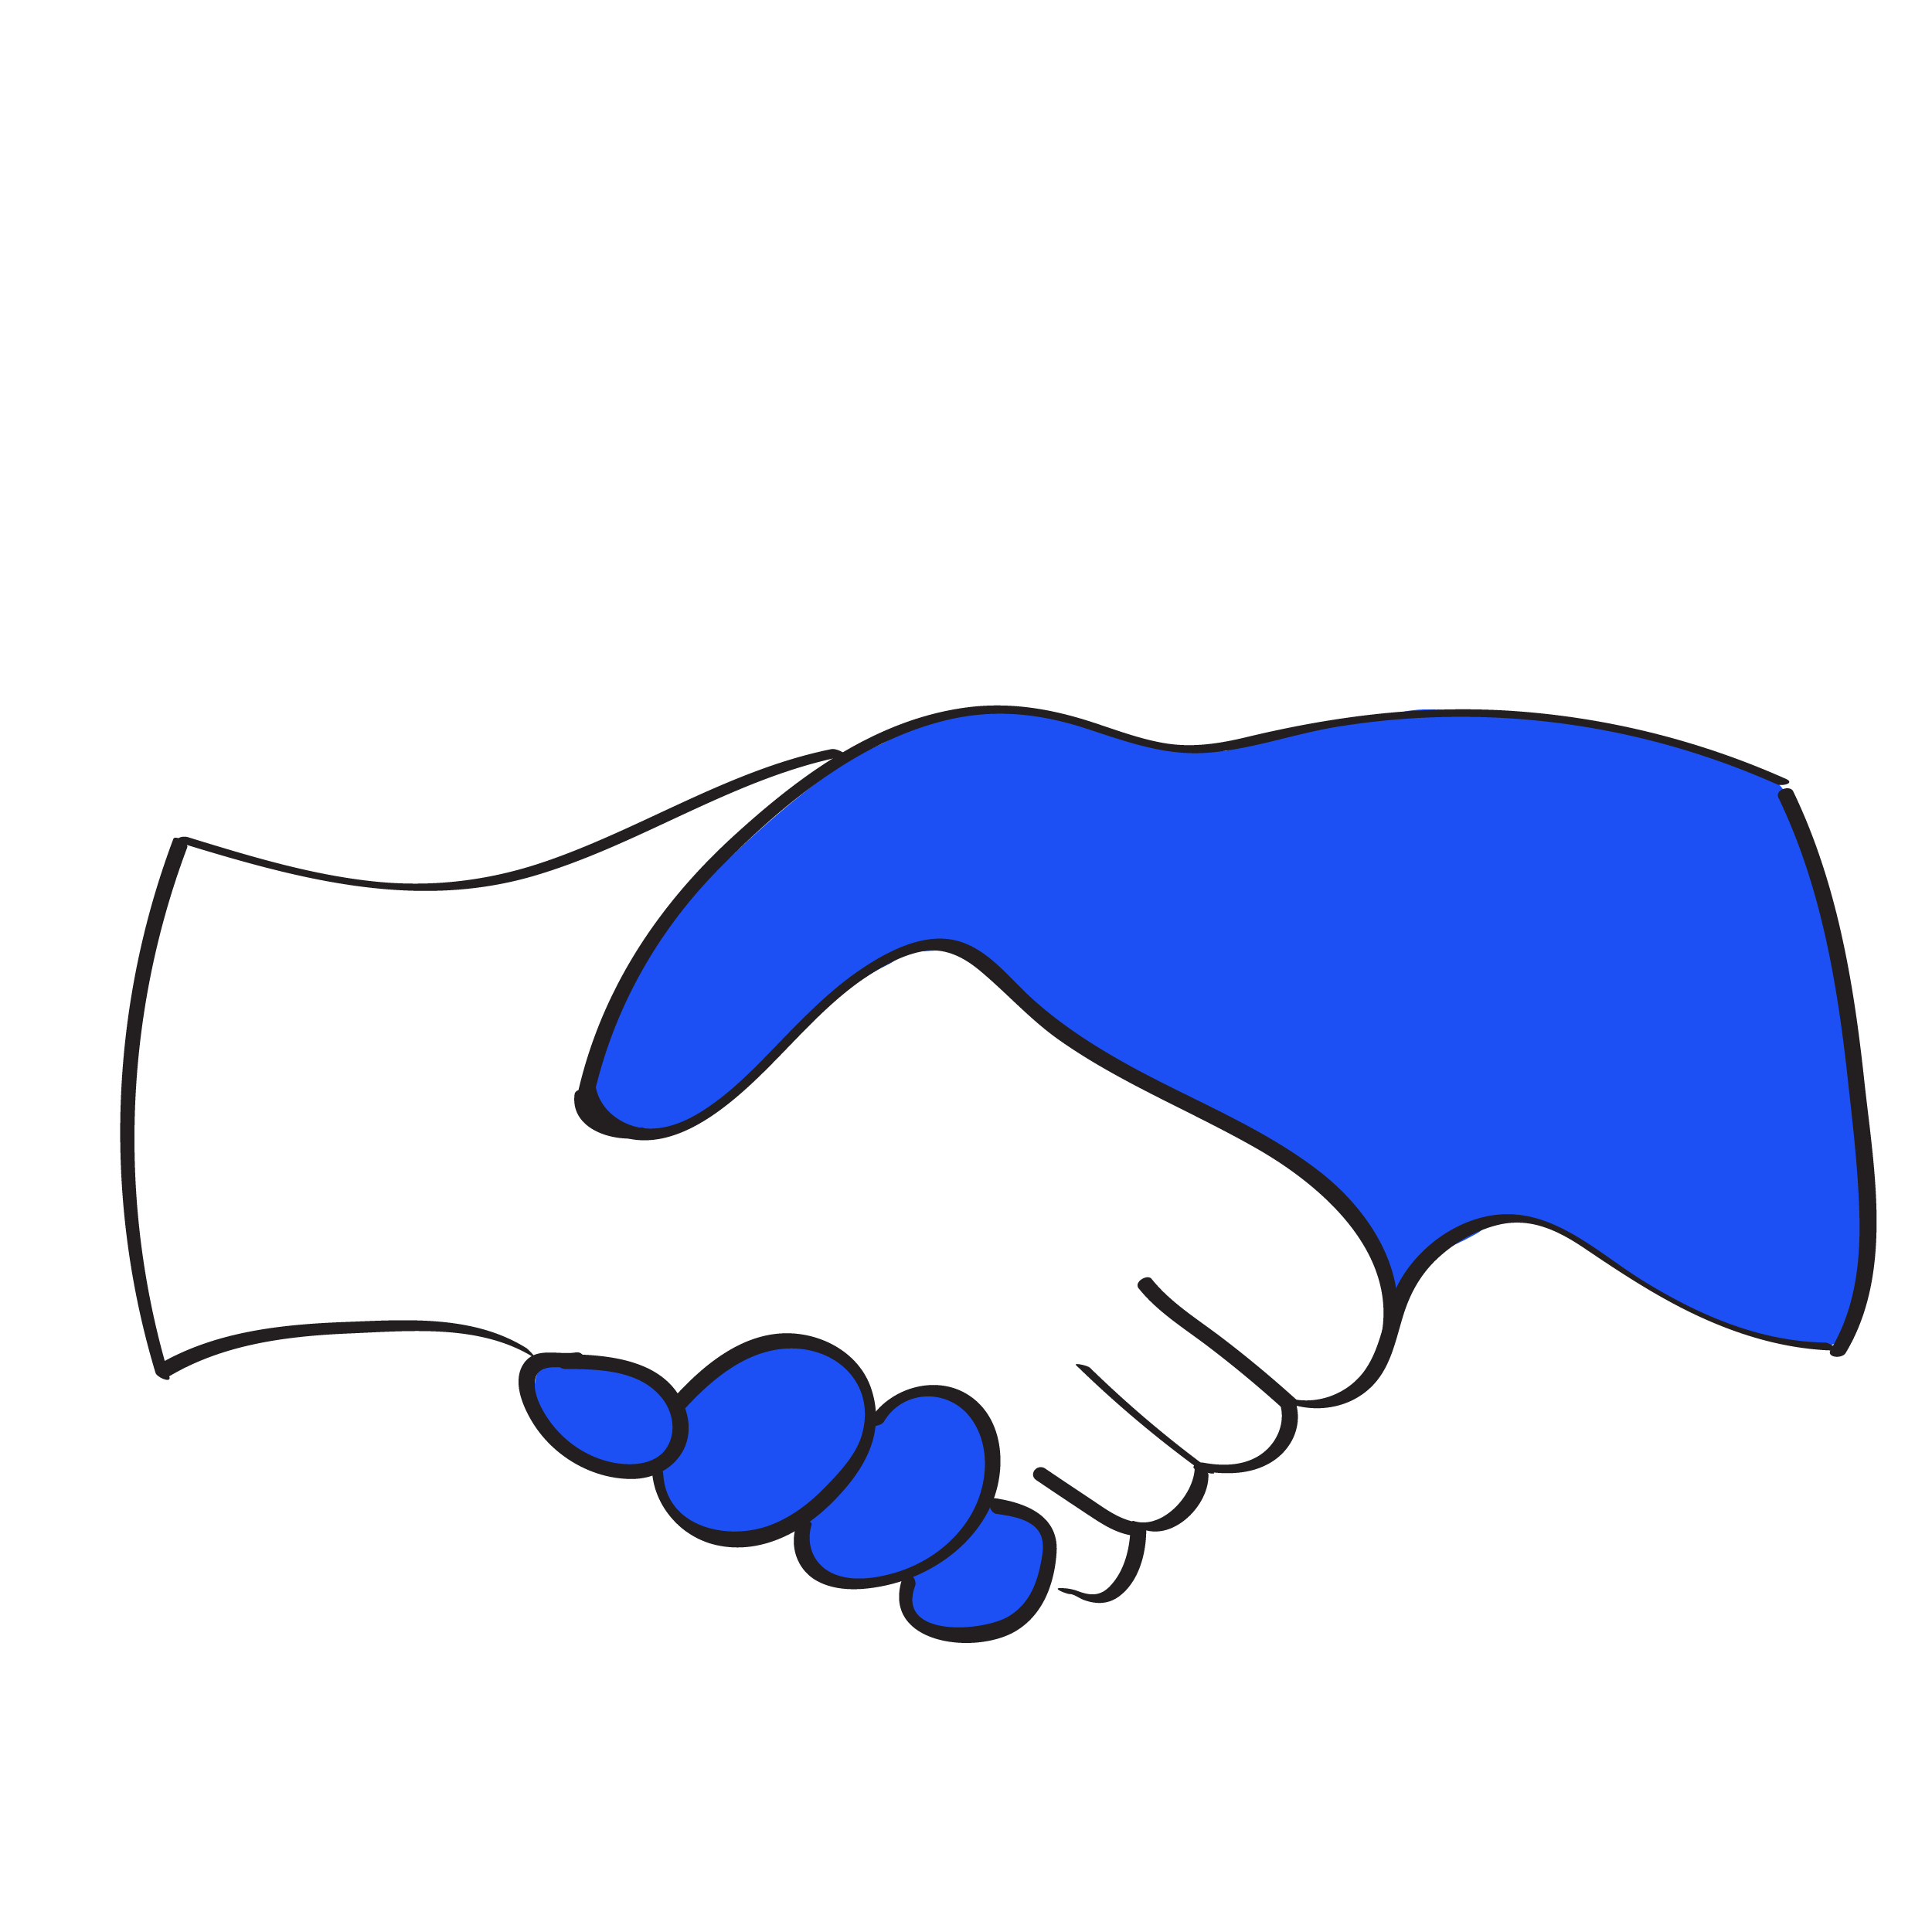 HandshakeSymbol